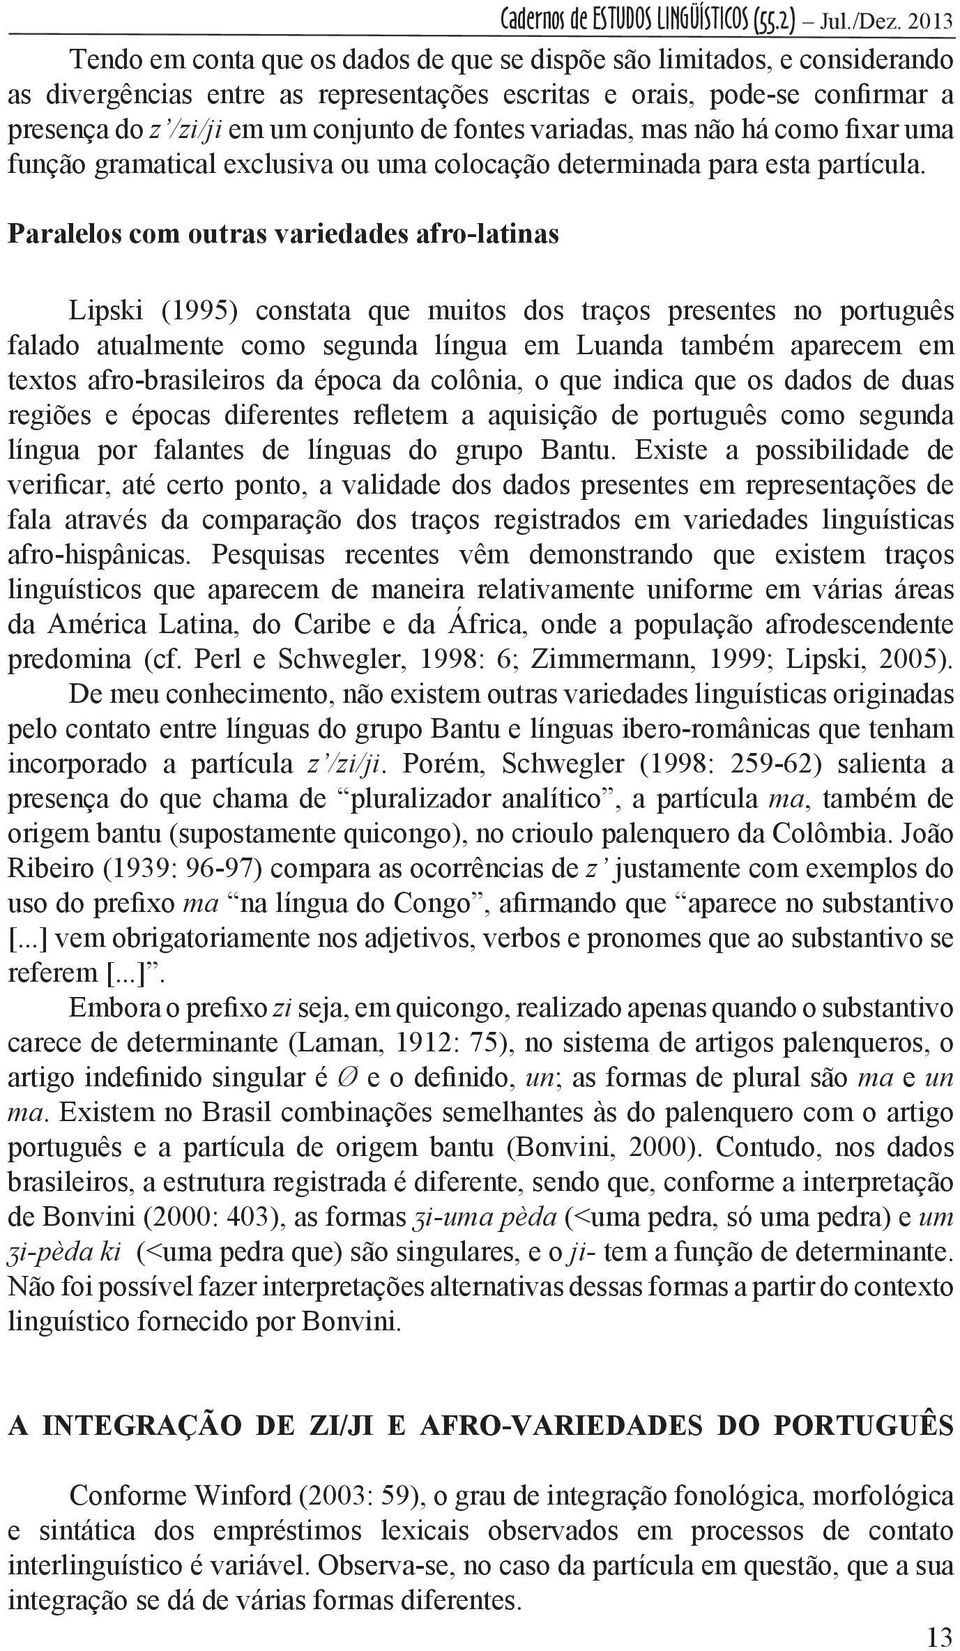 Paralelos com outras variedades afro-latinas Lipski (1995) constata que muitos dos traços presentes no português falado atualmente como segunda língua em Luanda também aparecem em textos